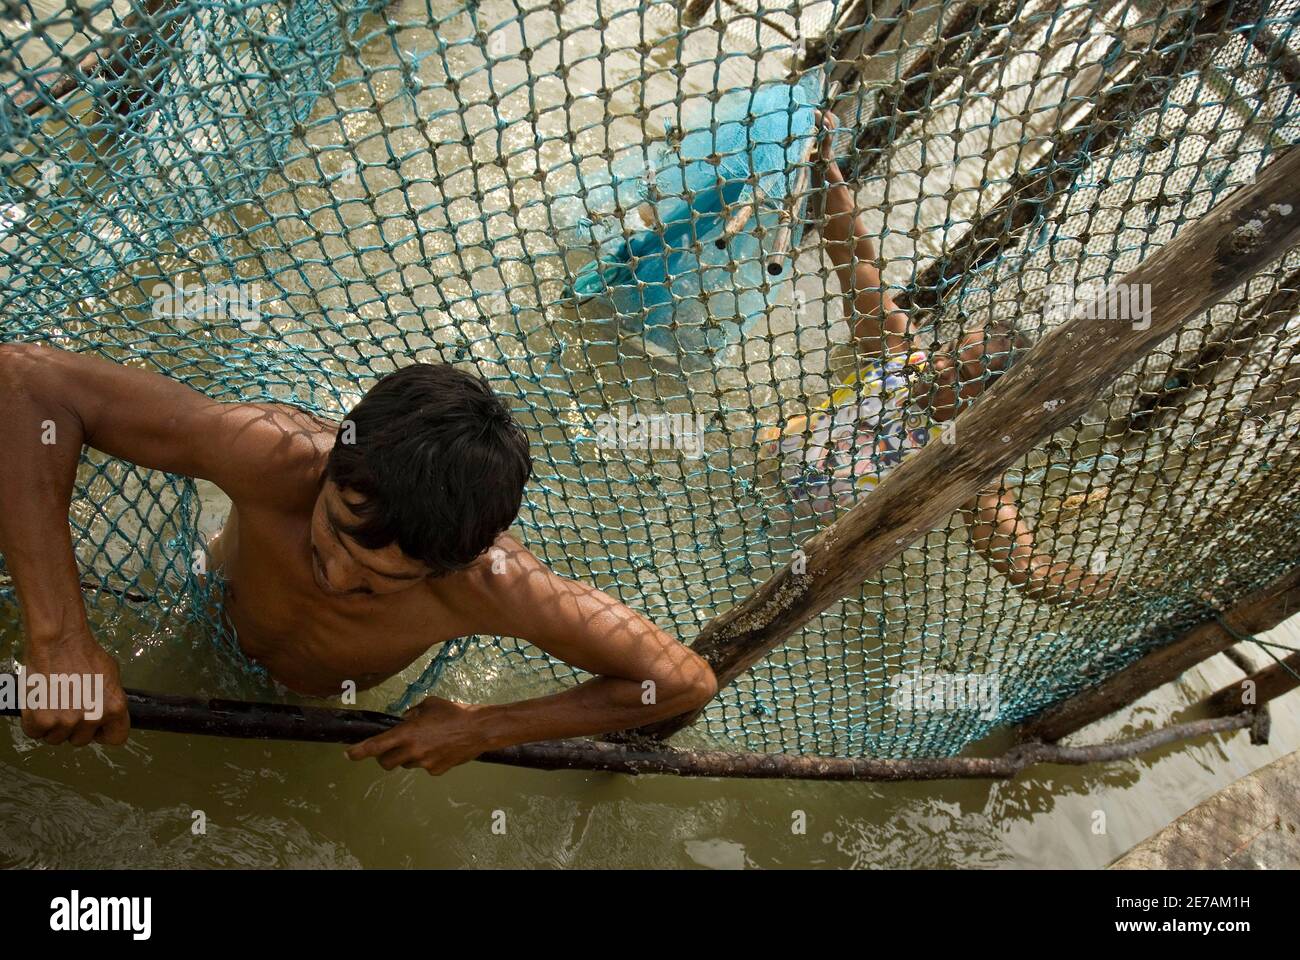 Le pêcheur brésilien Francivaldo de Souza Costa répare un piège à poisson  construit en forme de corral, à marée basse sur des plates-formes de sable  à l'embouchure de l'Amazone à Curuca, le